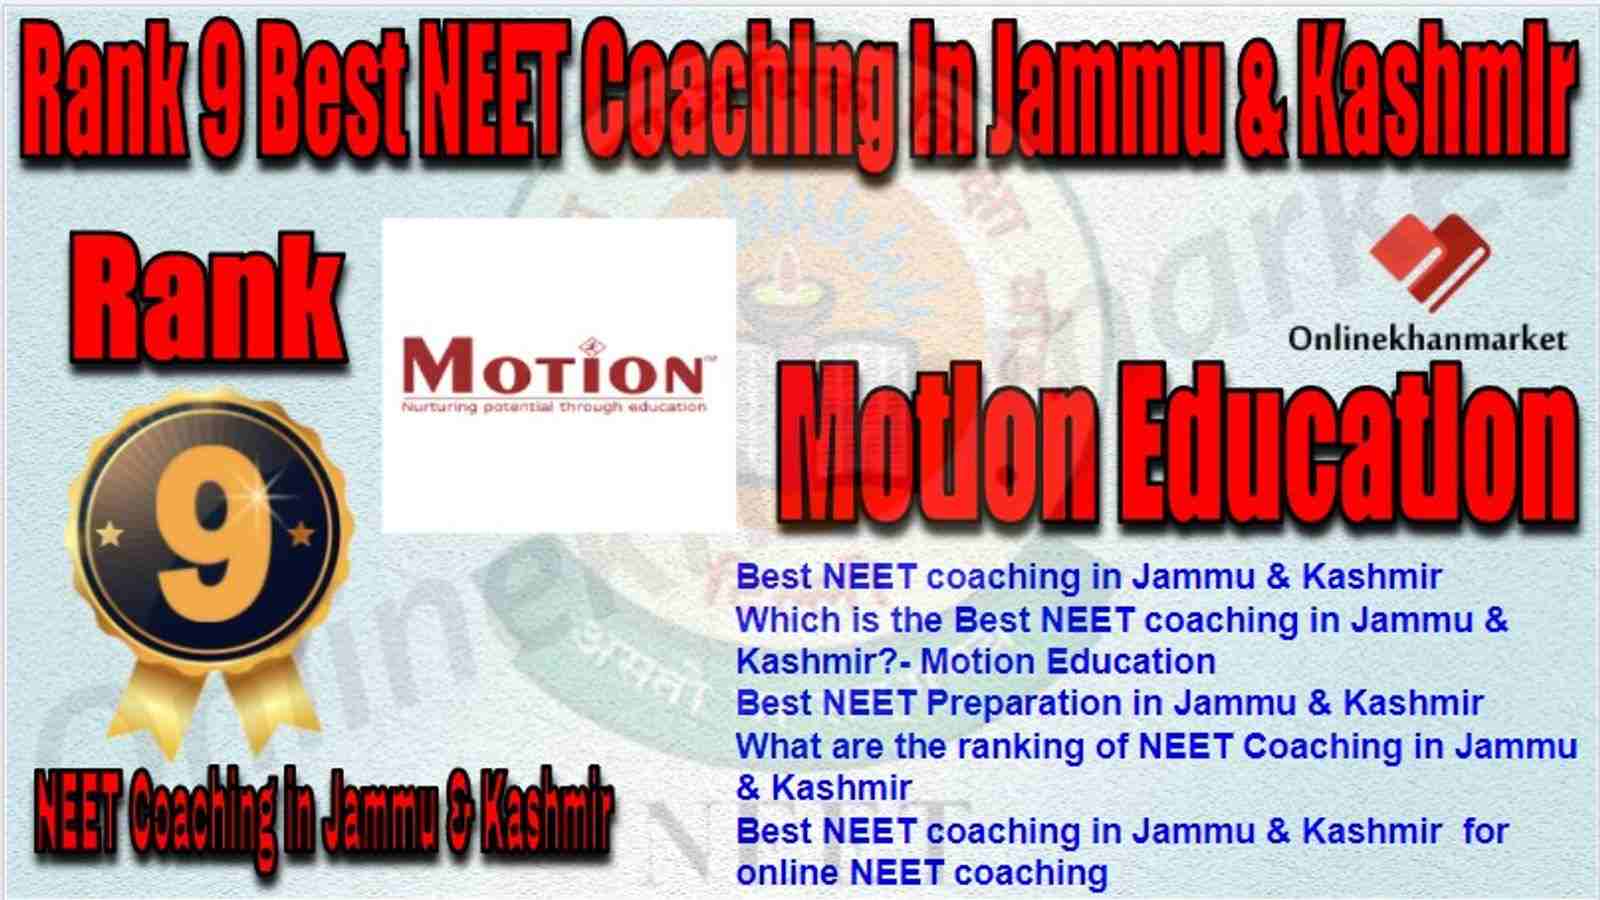 Rank 9 Best NEET Coaching in jammu &kashmir